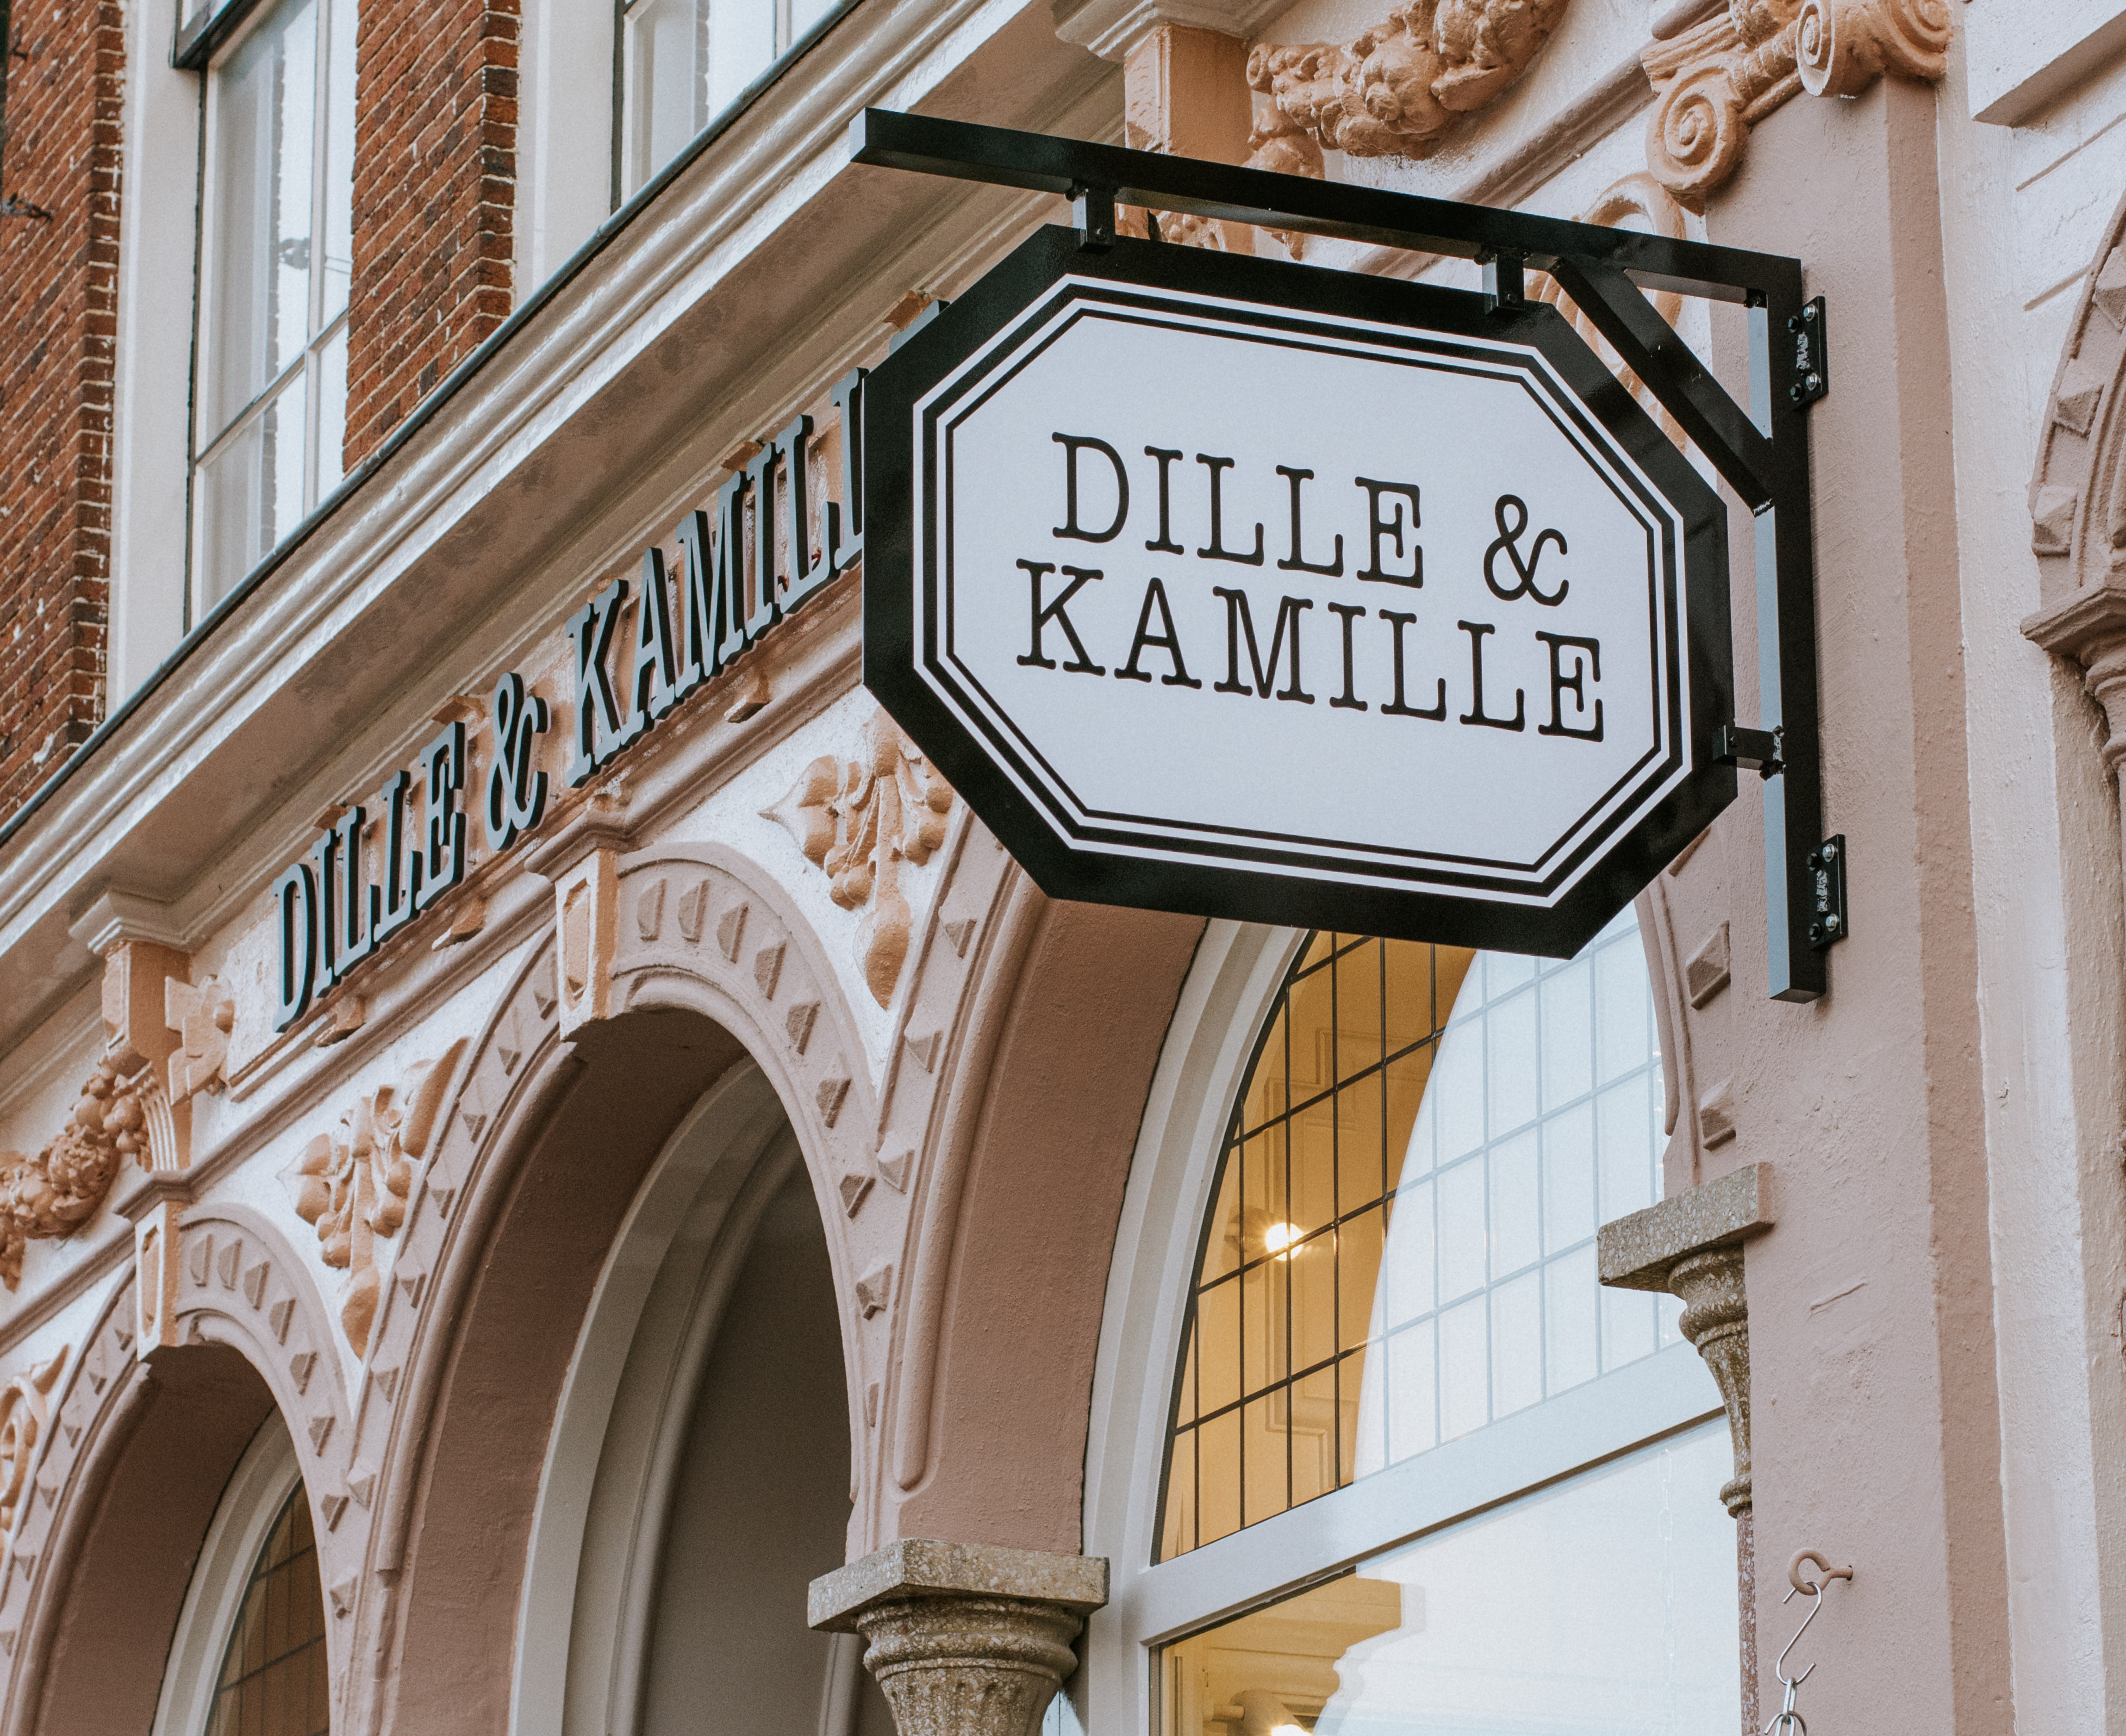 Dille & Kamille opent eerste vestiging in Duitsland